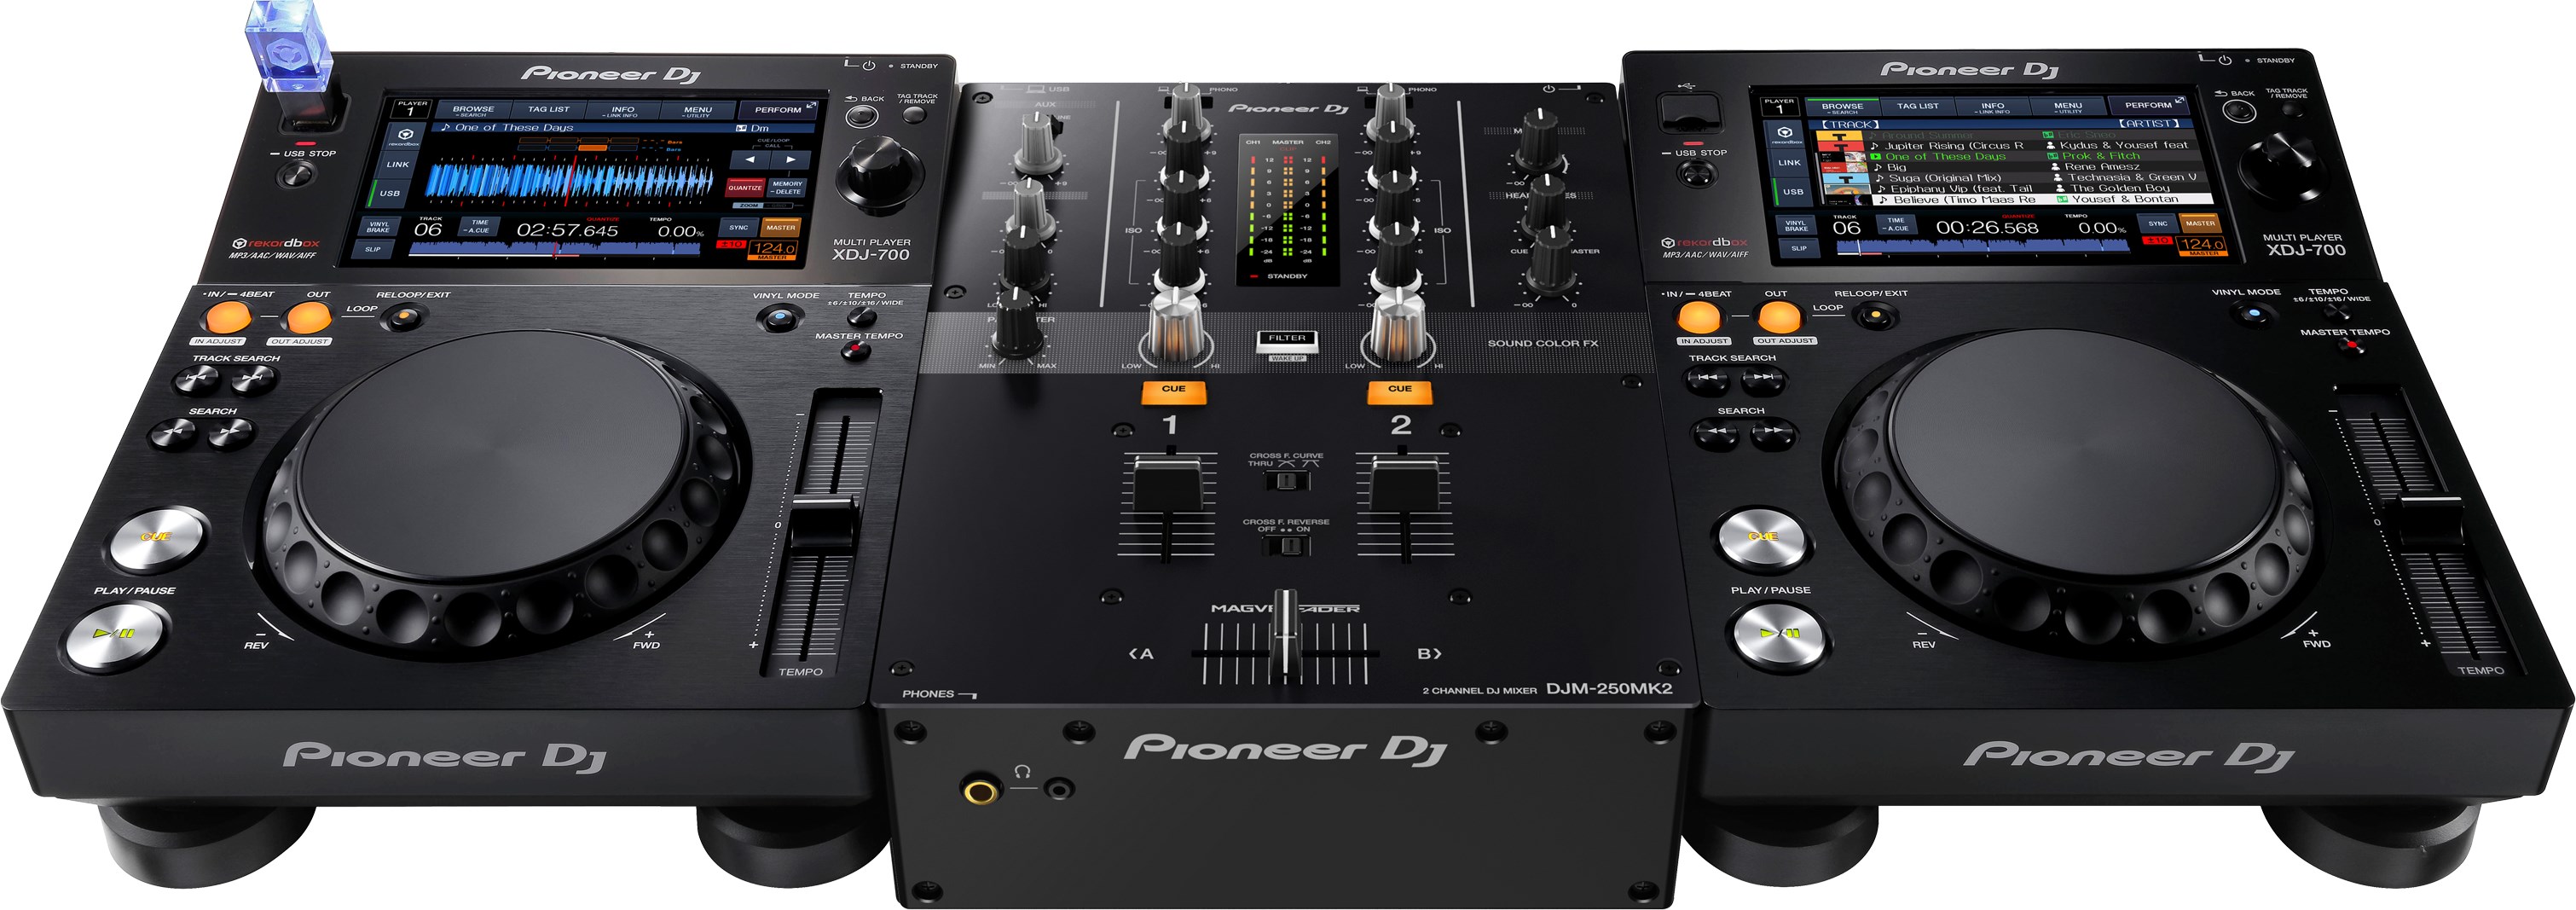 Pioneer Dj Djm-250mk2 - Mixer DJ - Variation 3